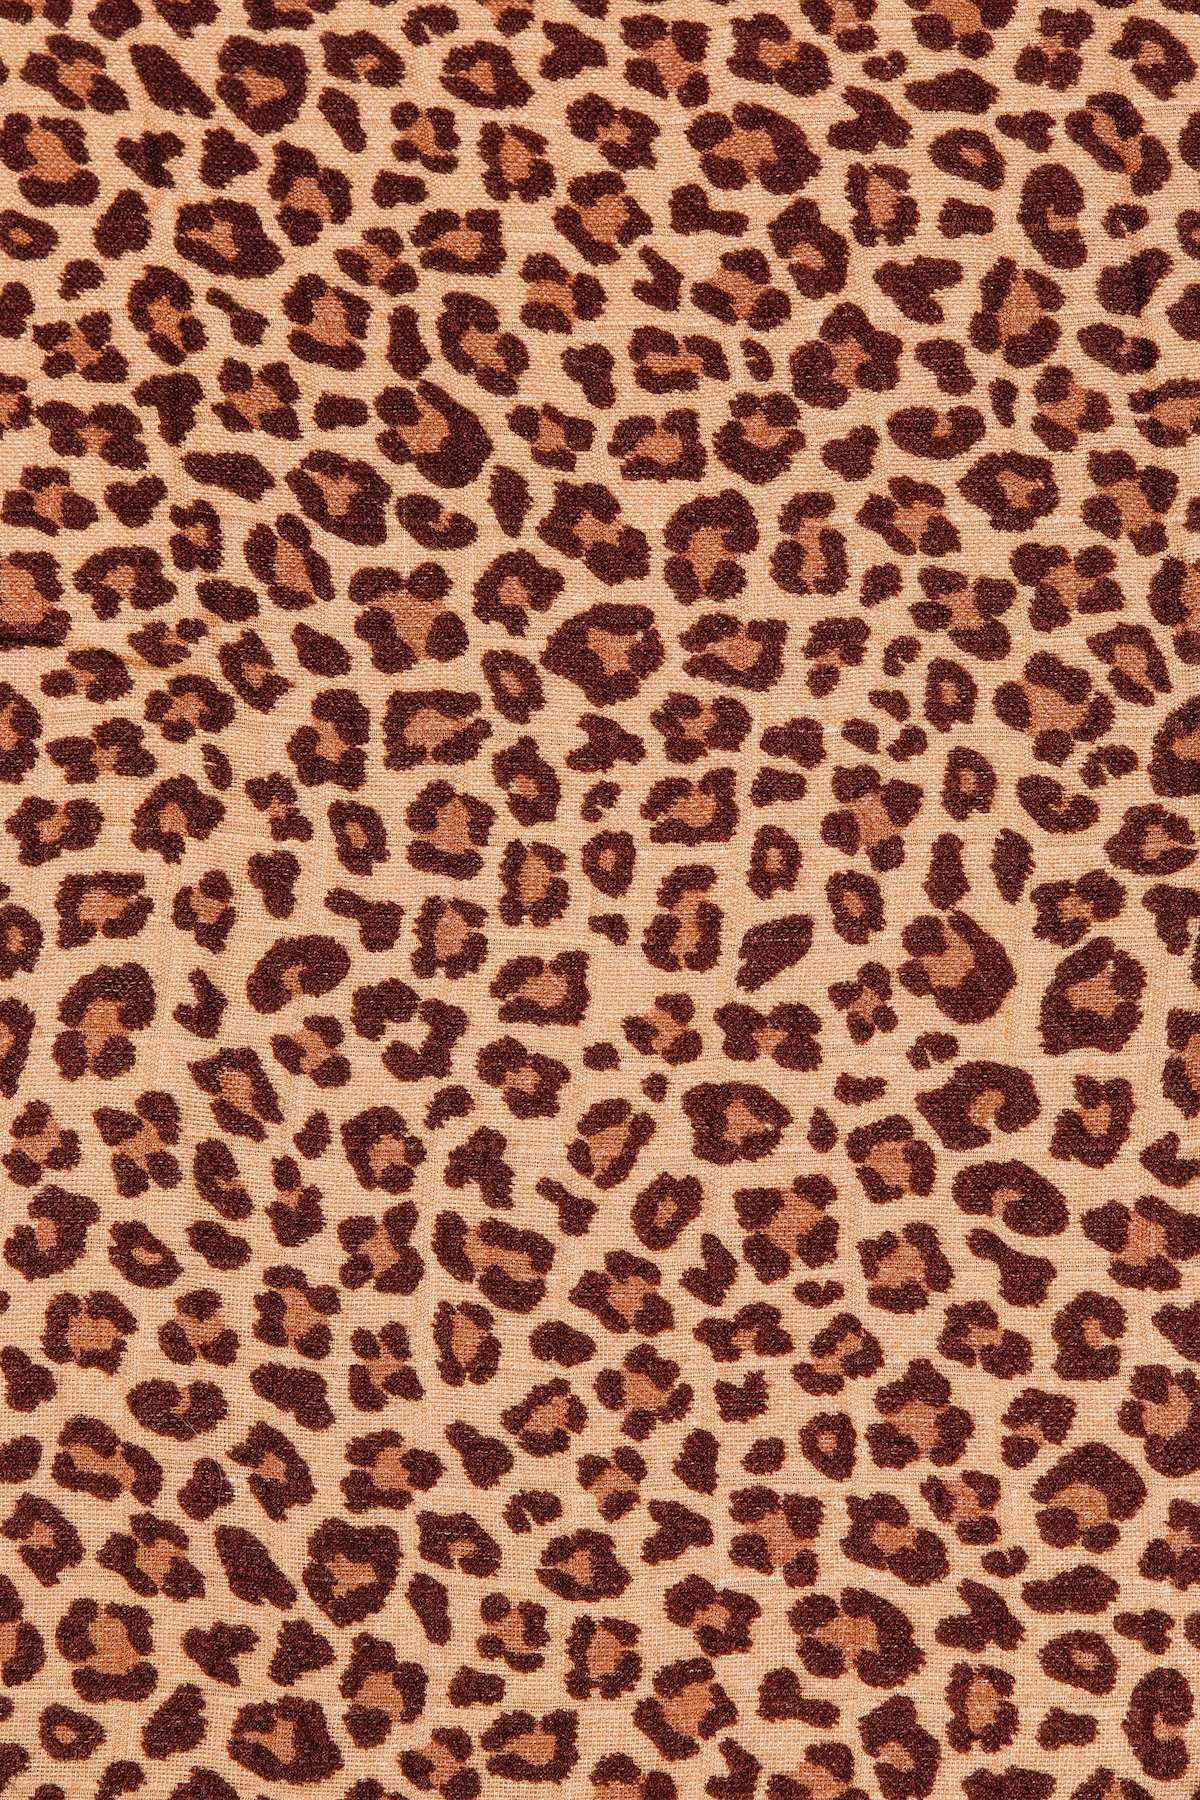 iPhone Cheetah Print Wallpaper 1